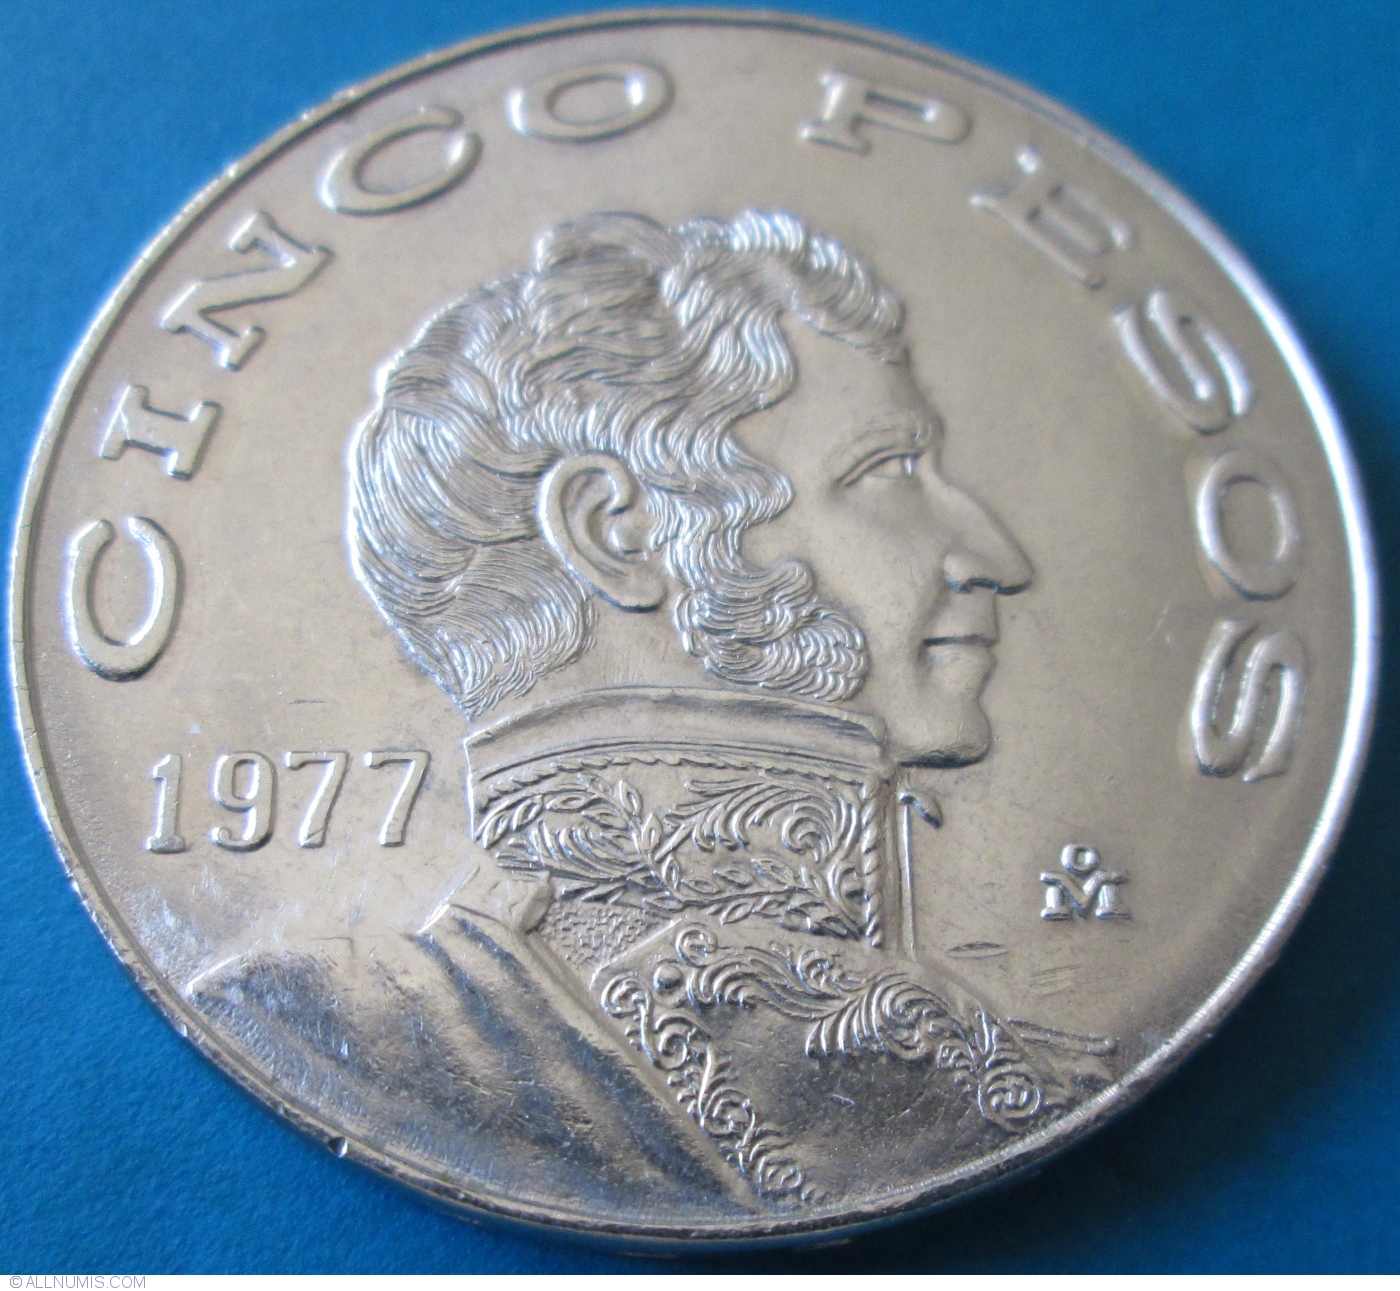 5 Pesos 1977 Coin Value